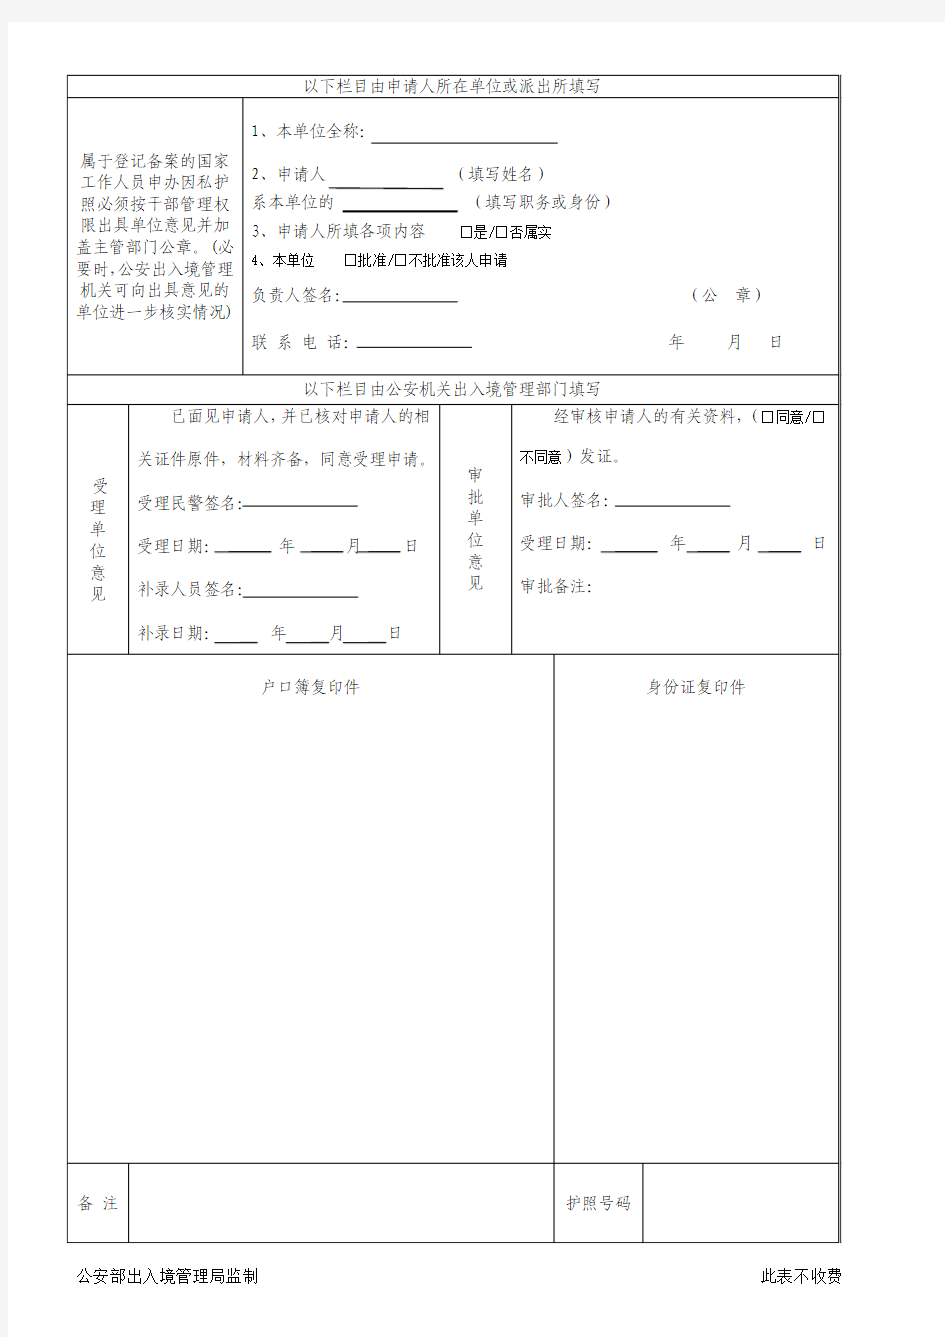 中国公民因私出境护照申请表